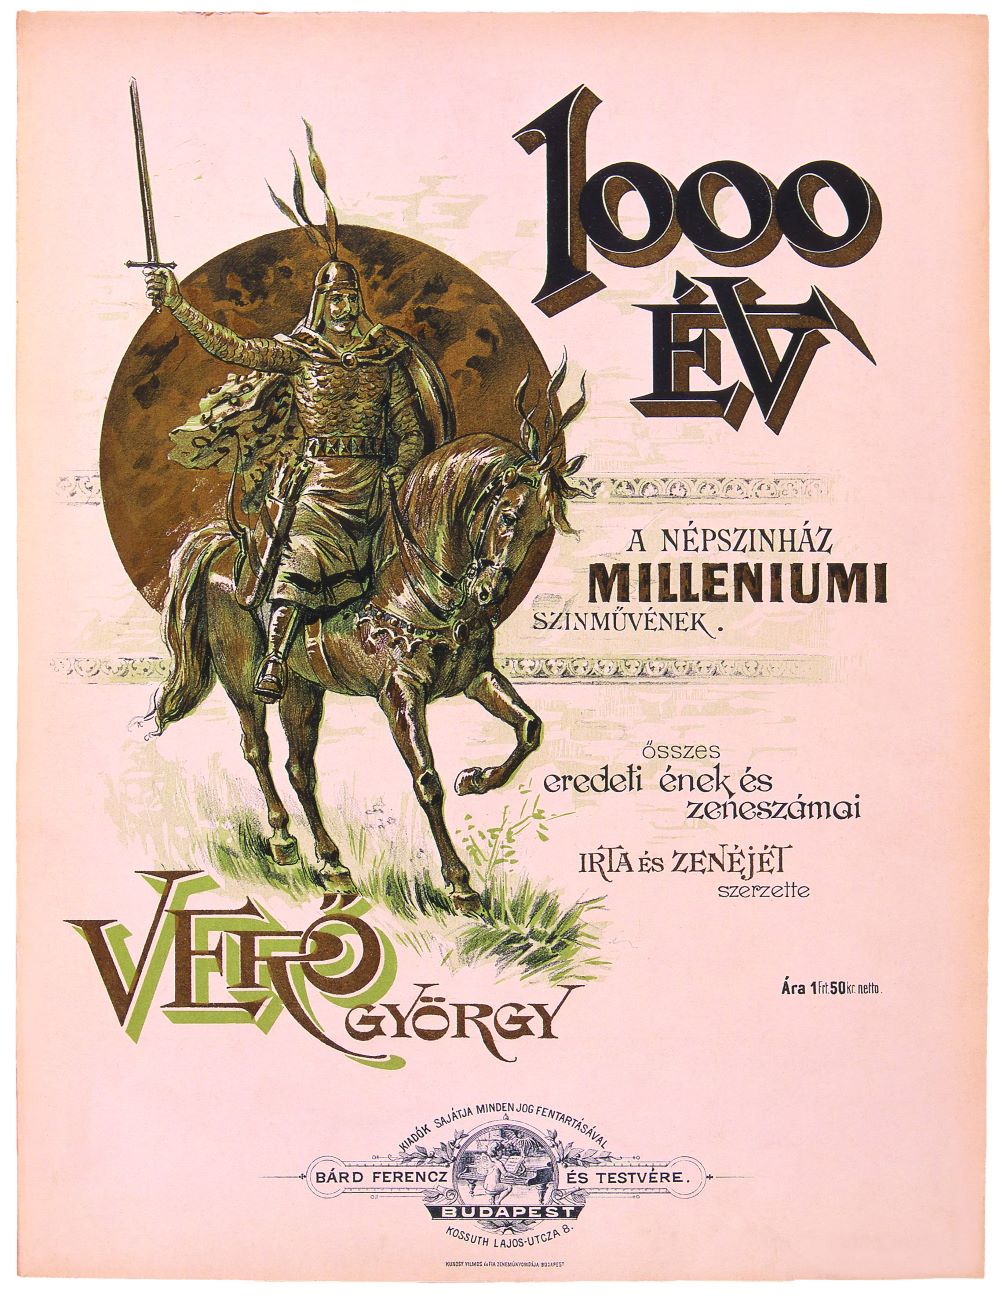 Kottacímlap Verő György 1000 év című színművének dalaival, 1896. Árpád vezér. Ismeretlen művész színezett litográfiája